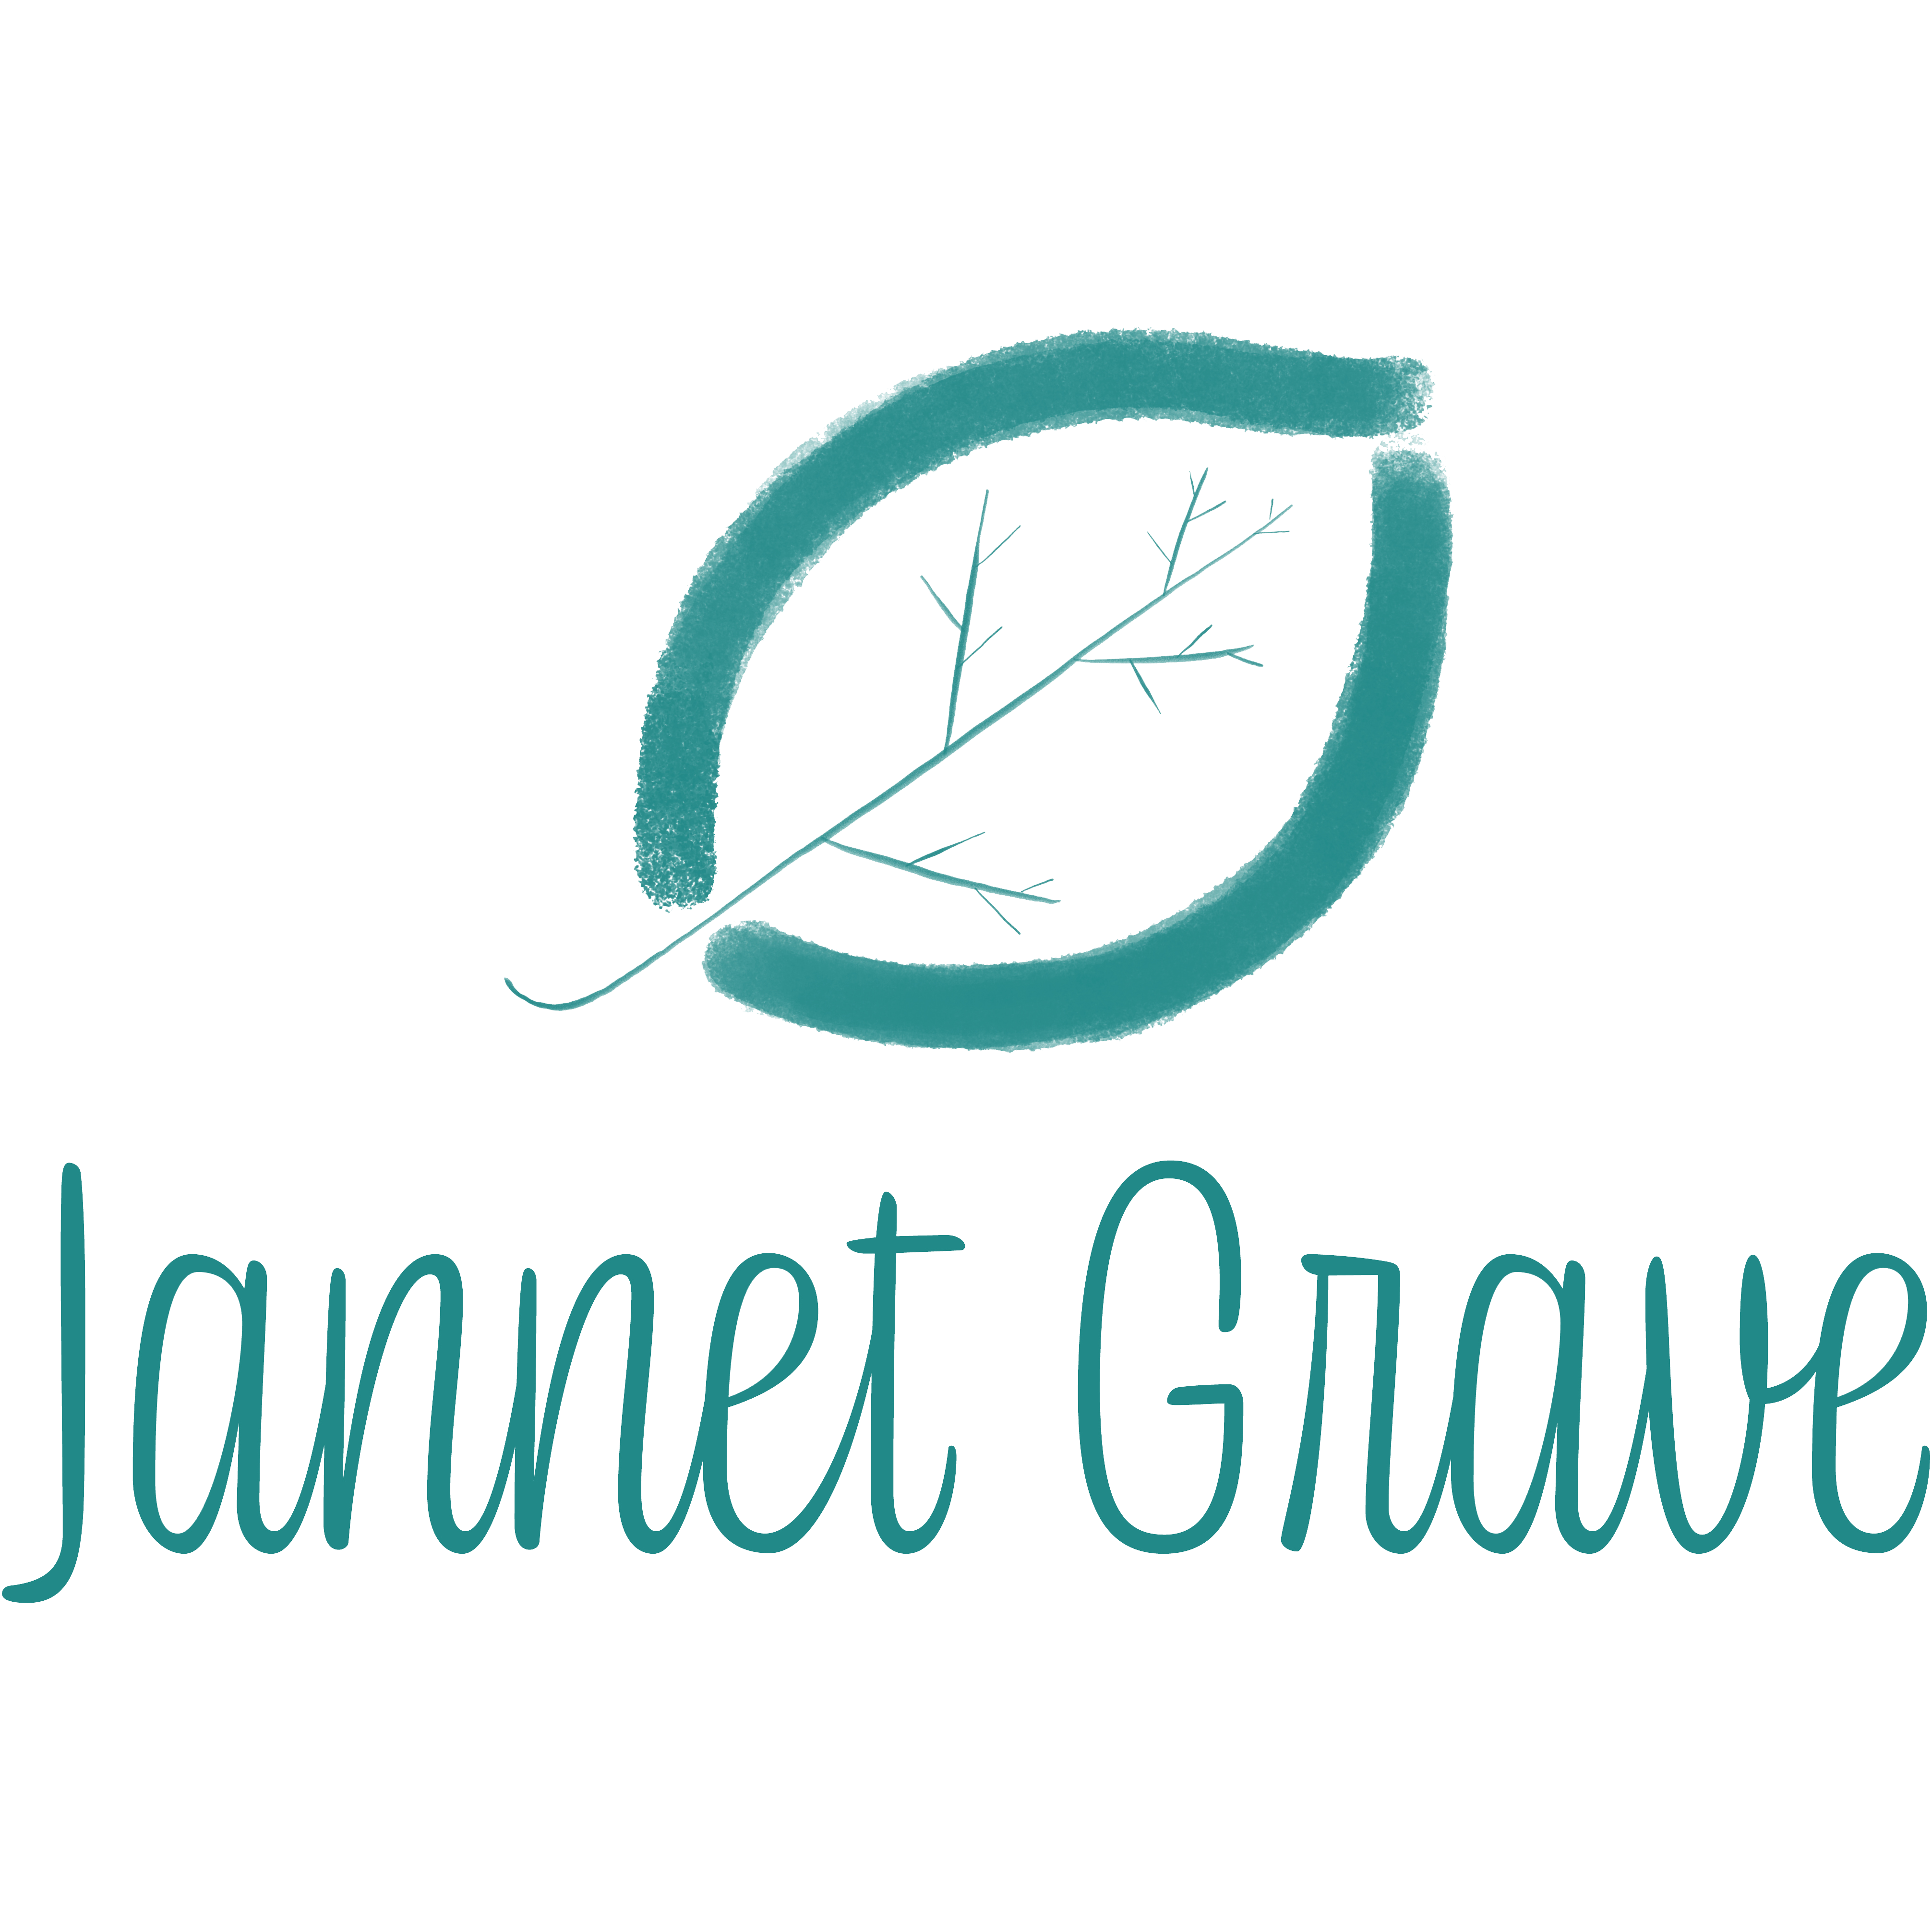 Jannet Grave